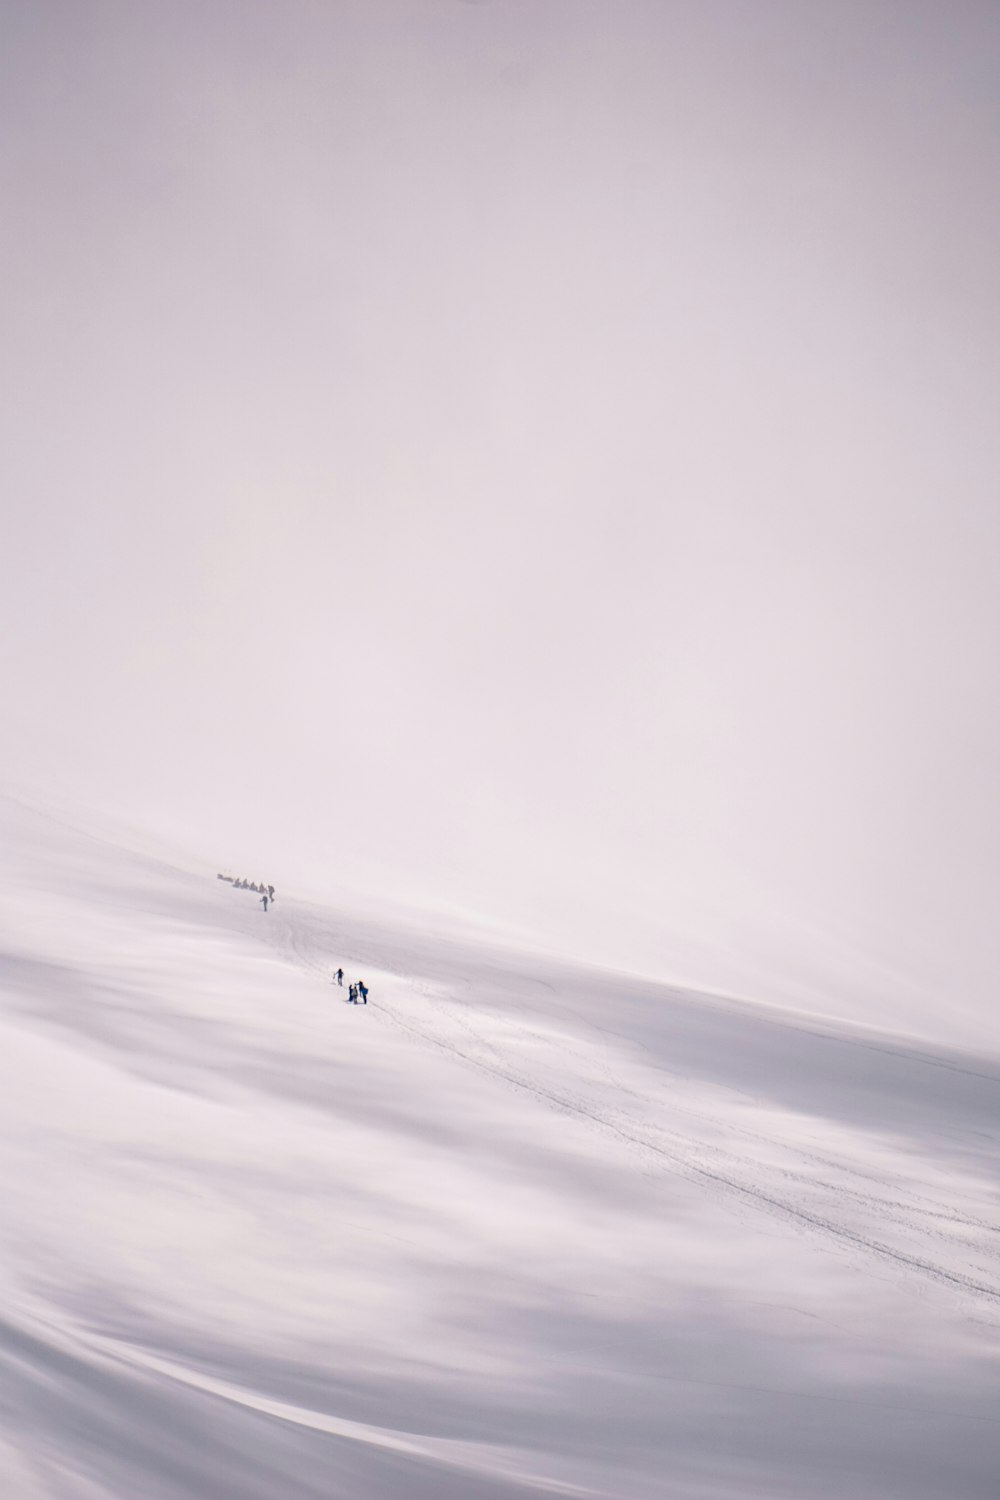 personne en veste noire marchant sur un champ couvert de neige blanche pendant la journée